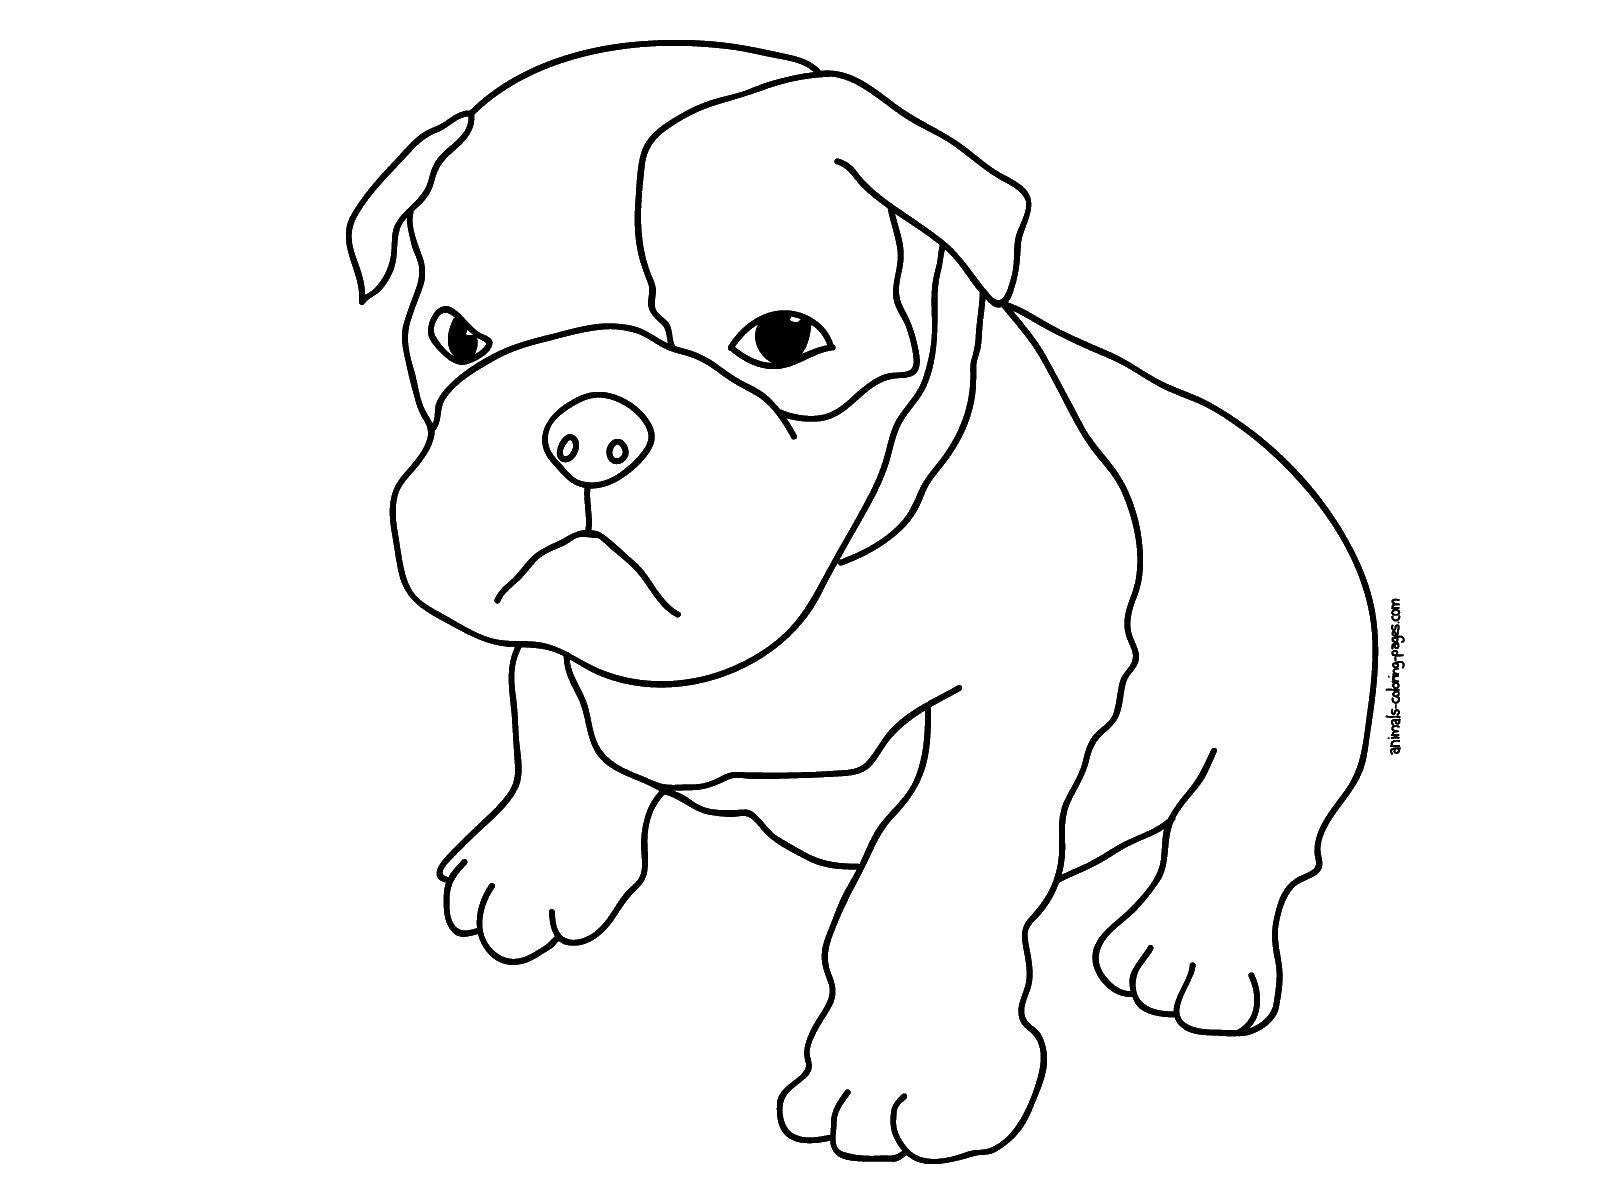 Coloring Bulldog. Category Pets allowed. Tags:  bulldog, dog.